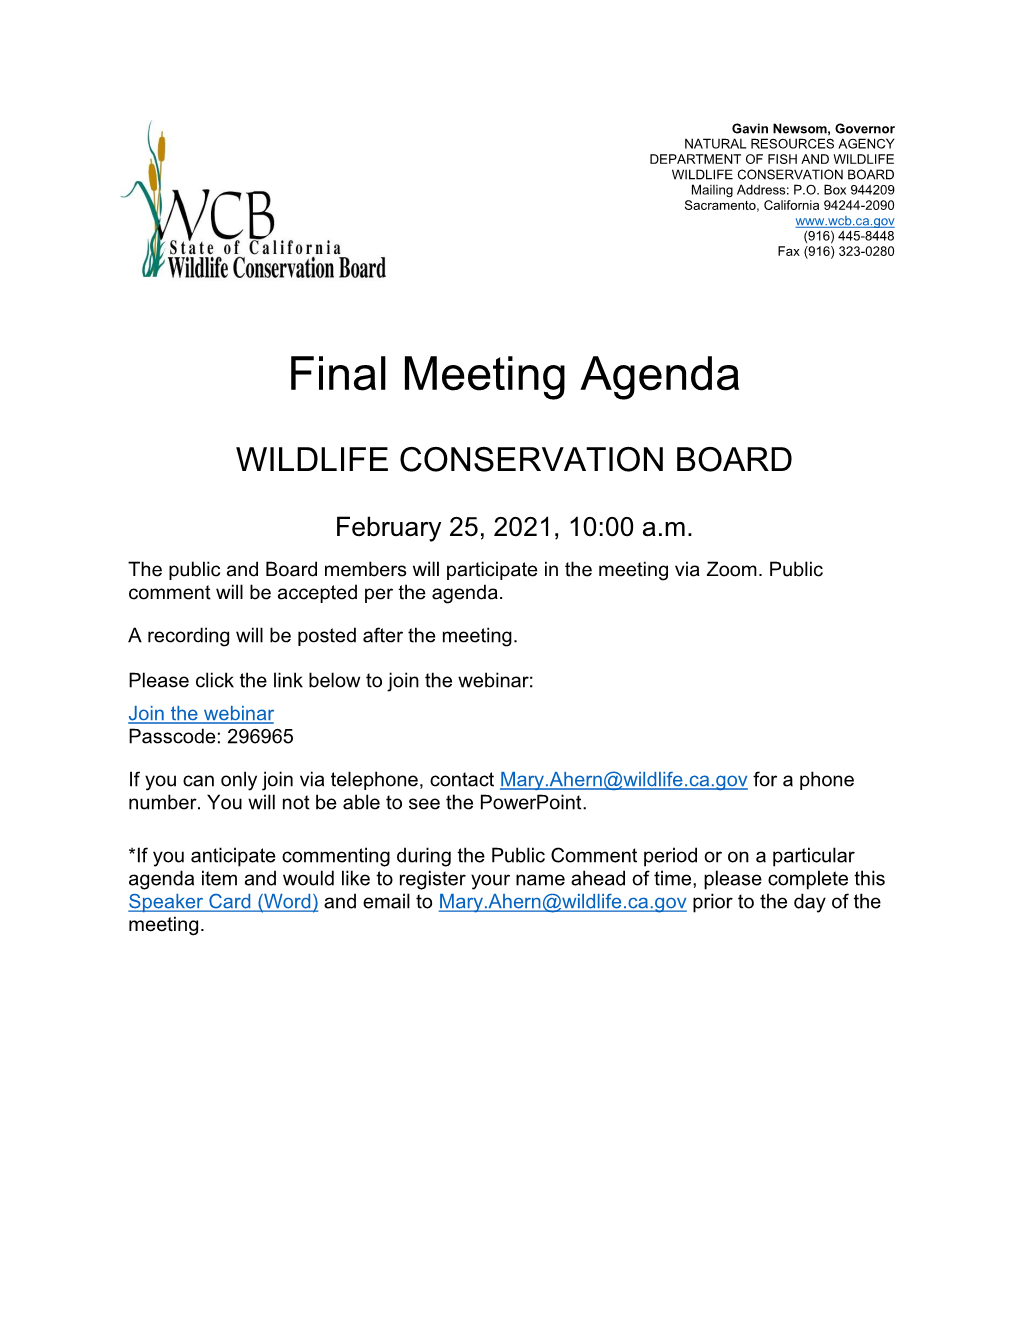 Final Agenda for February 2021 WCB Board Meeting